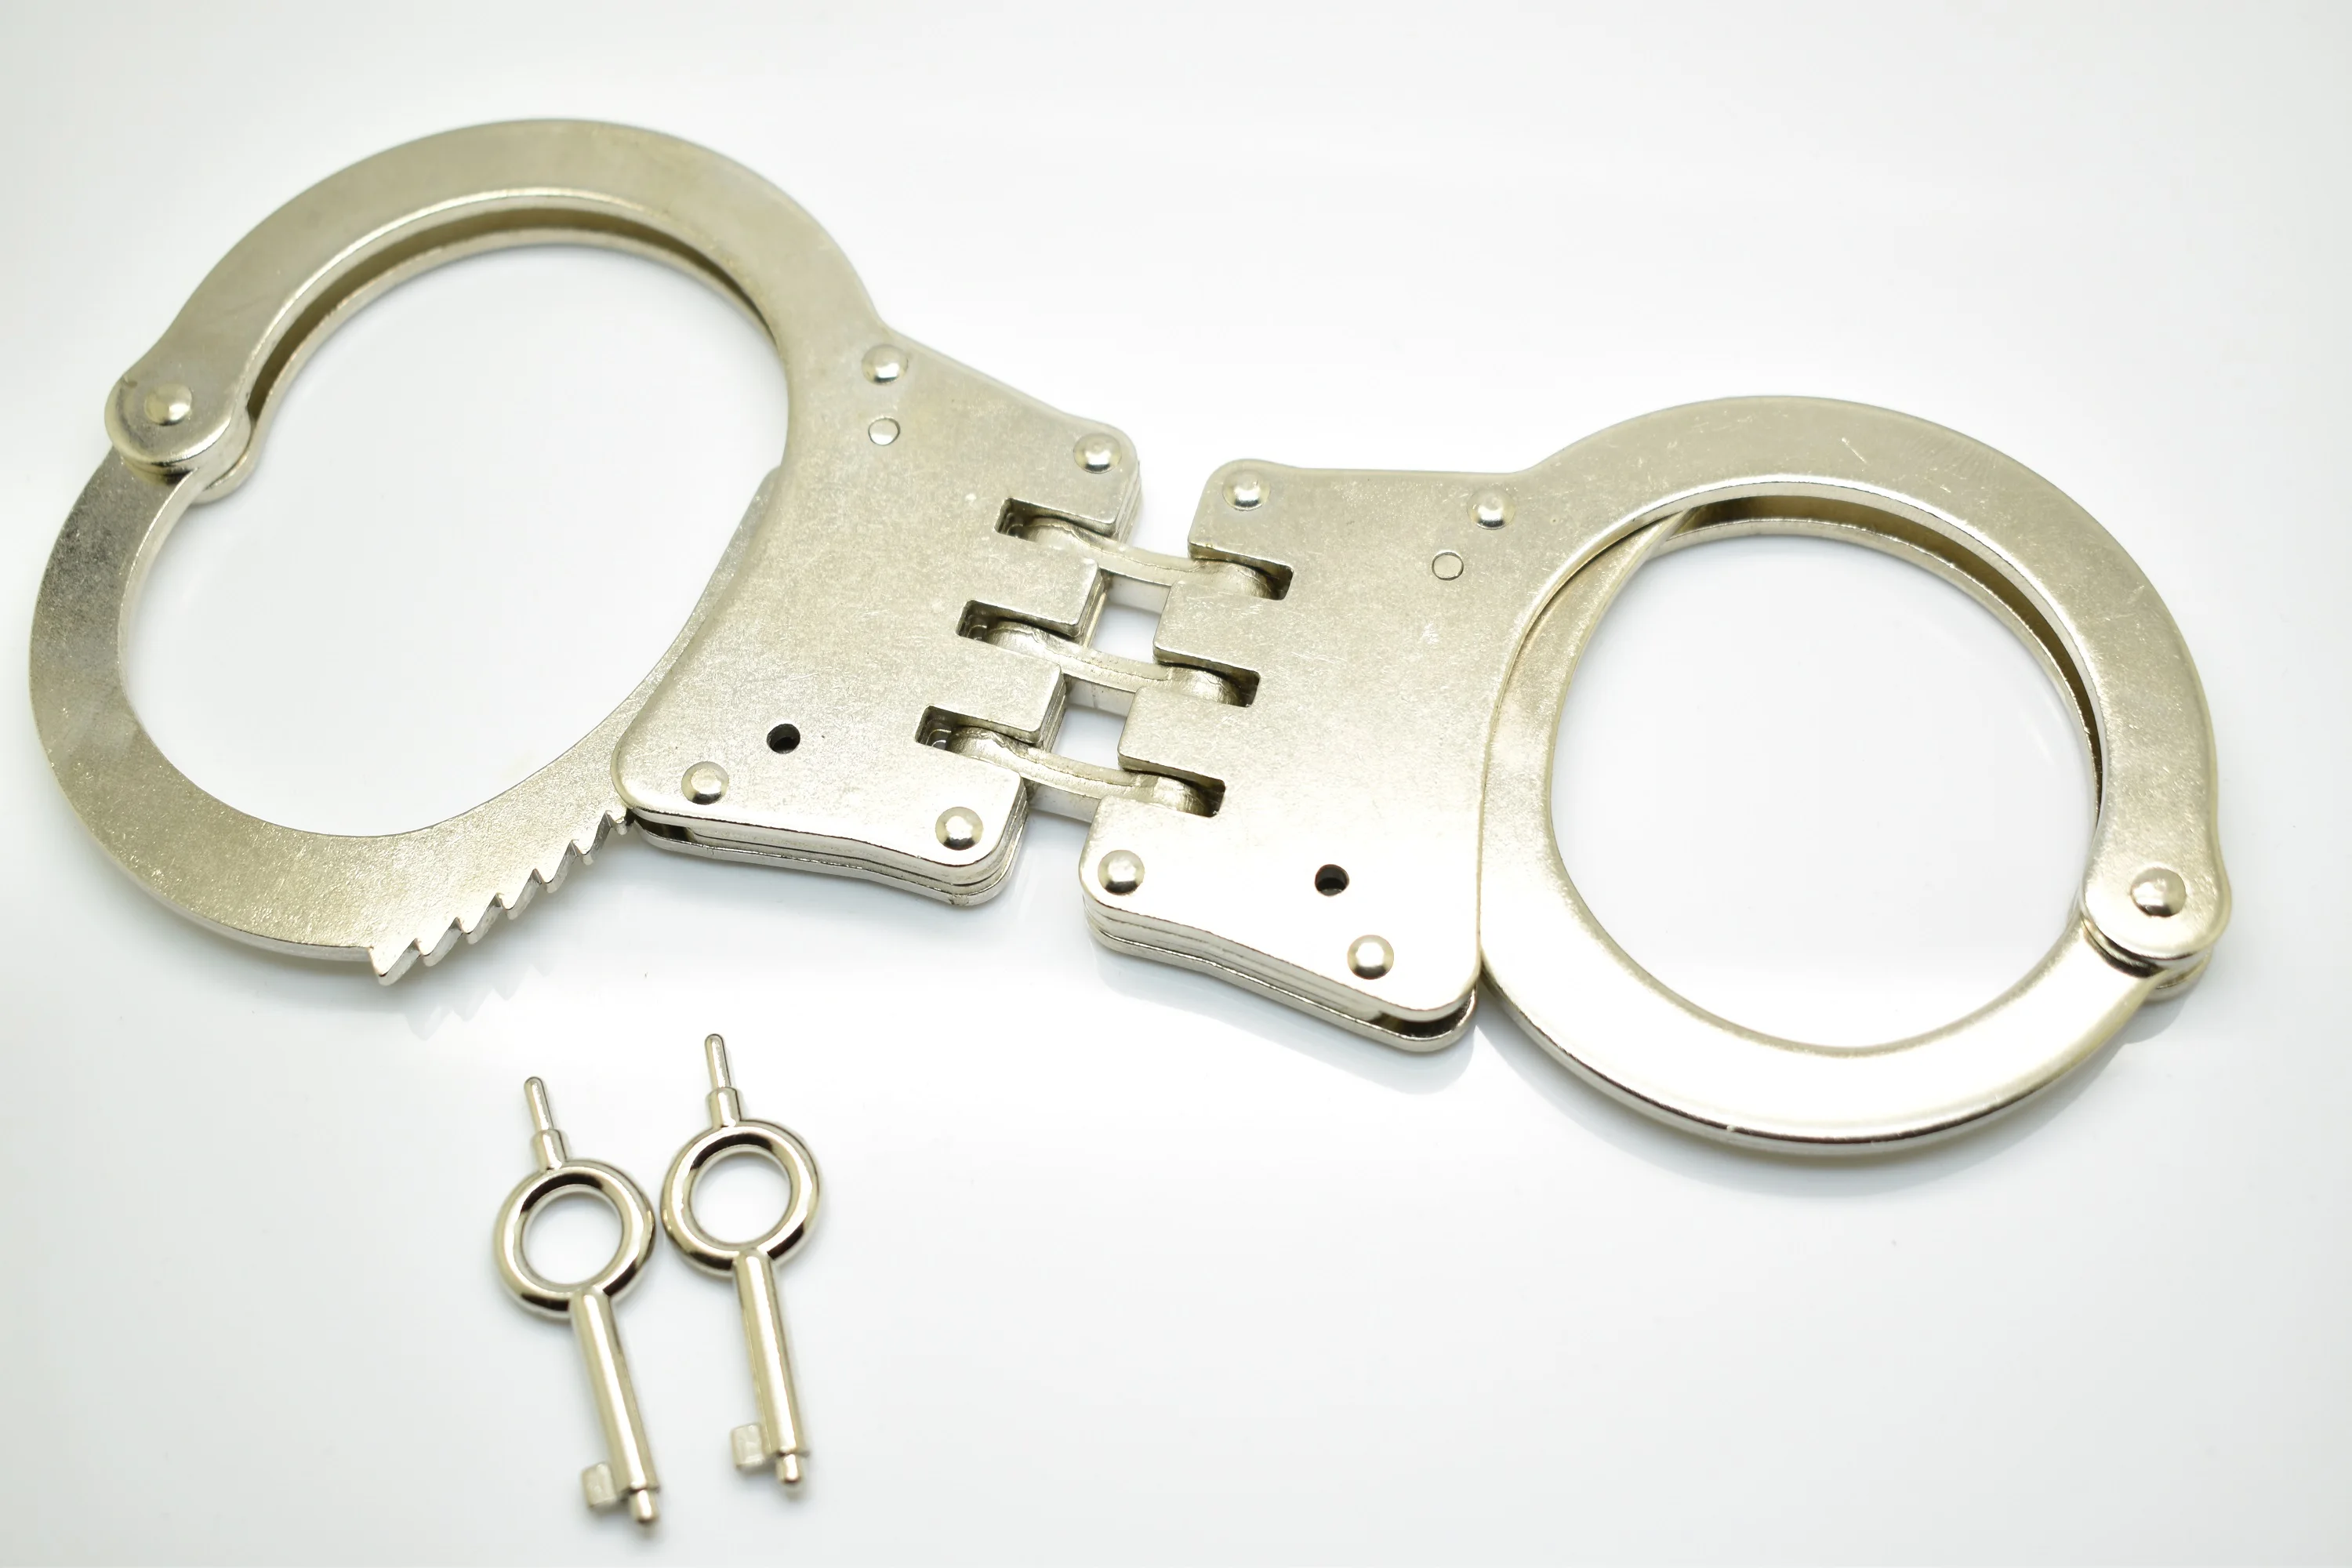 Полицейские профессиональные 3 навесные стальные наручники новые в коробке + 2 ключа